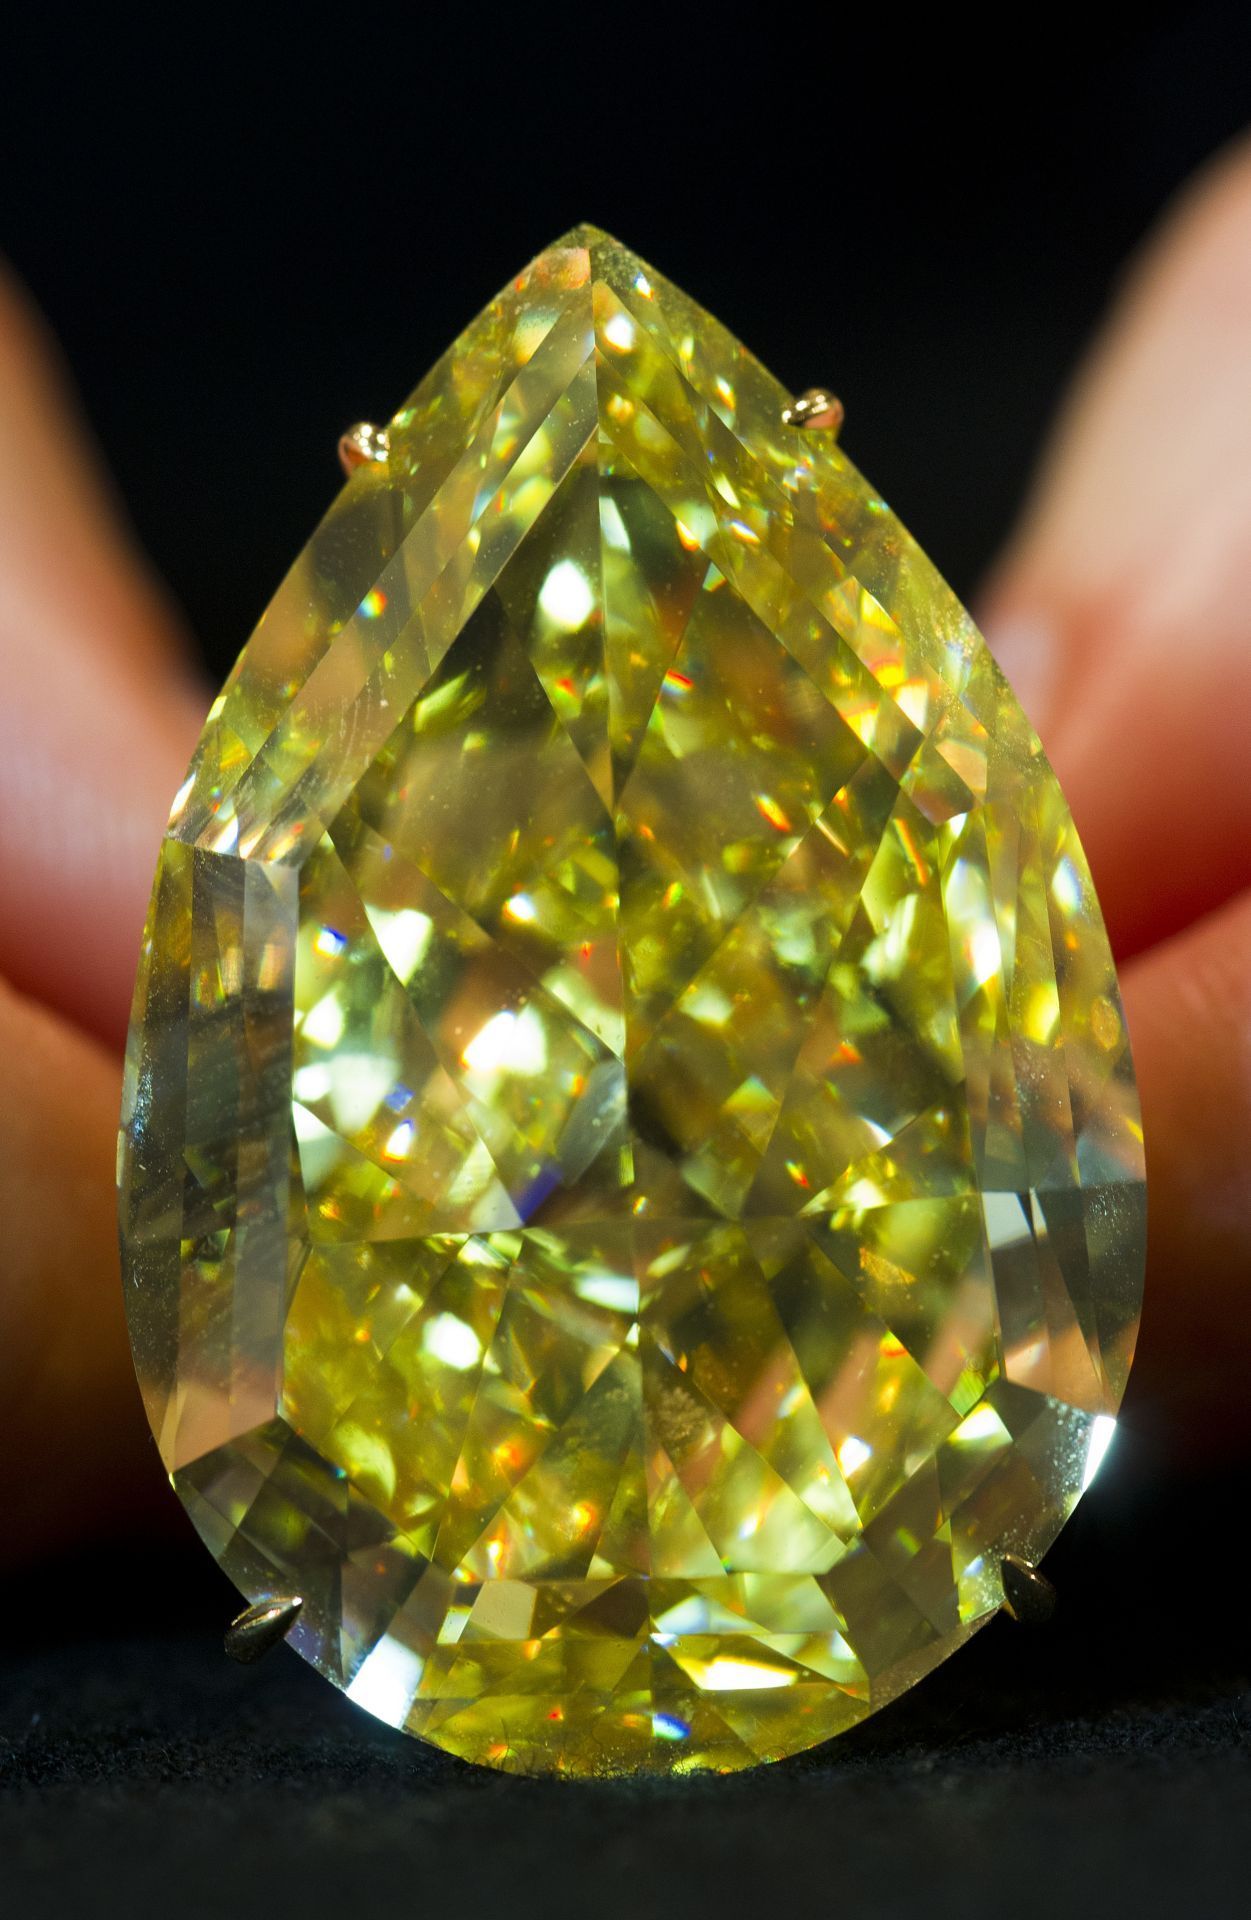 Der "Sun Drop" aus Südafrika gilt mit 110 Karat als der größte gelbe Diamant, der je versteigert wurde. 2011 erzielte er bei einer Genfer Auktion etwas über 8 Millionen Euro. Entdeckt wurde er 2010 und ist im "Birnen“- oder auch Tropfenschliff veredelt, wodurch er seinen Namen erhielt.